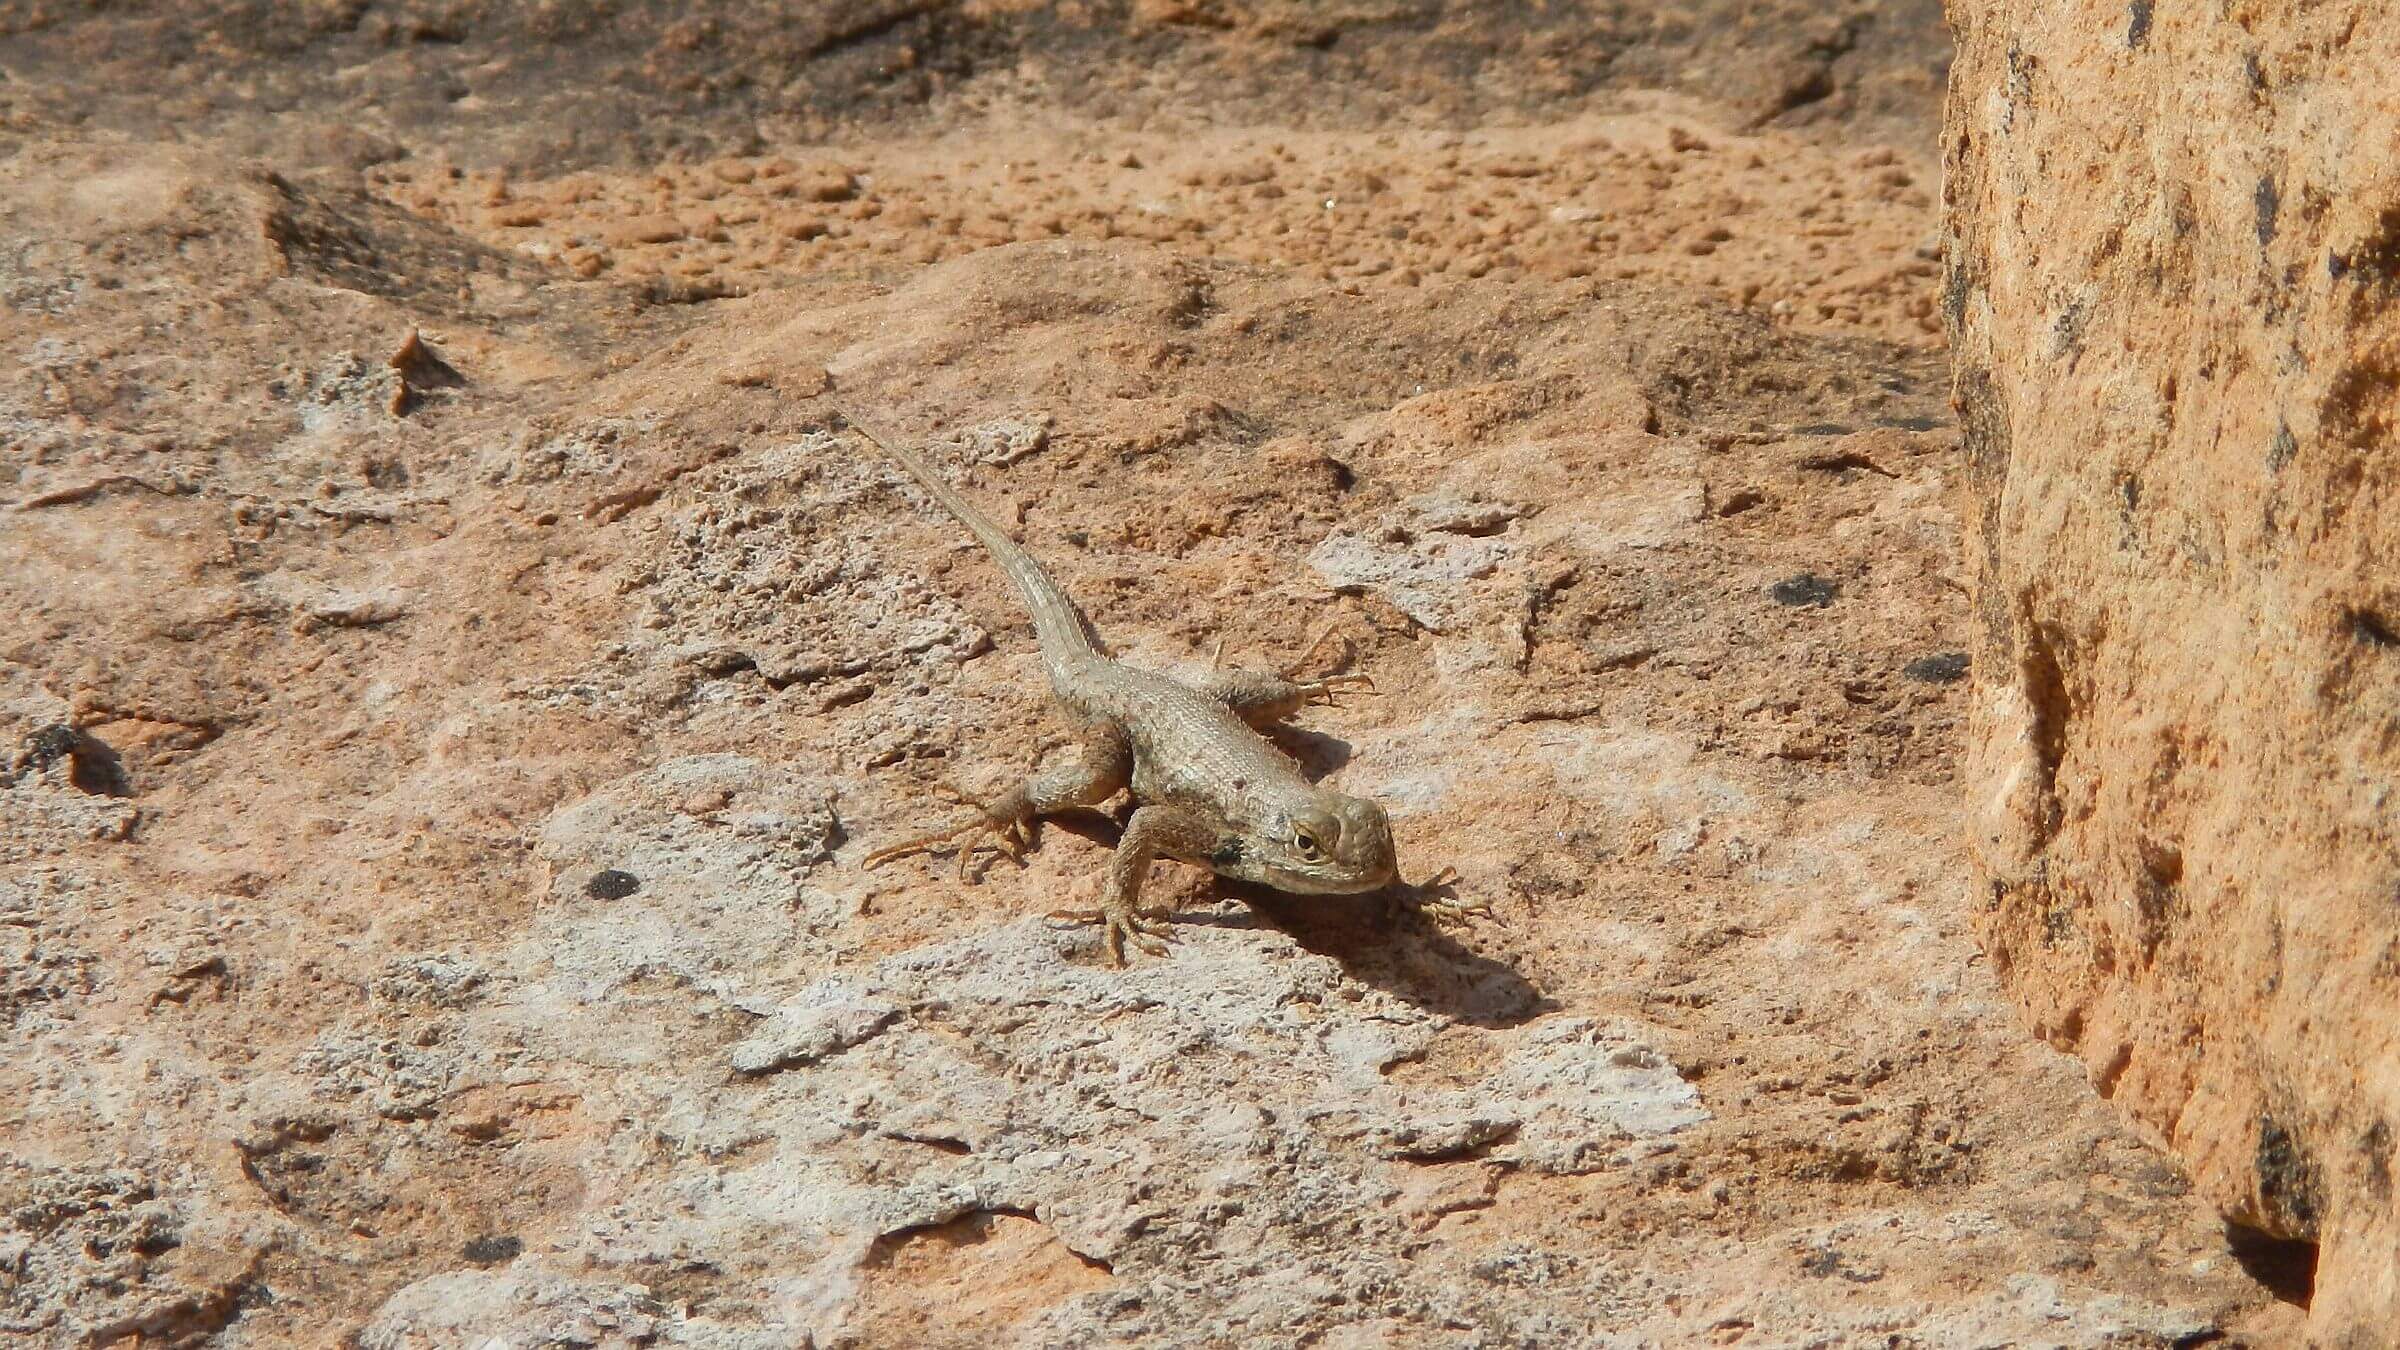 Grand Gulch Wilderness Study Area, Desert spiny lizard (Sceloporus magister), May